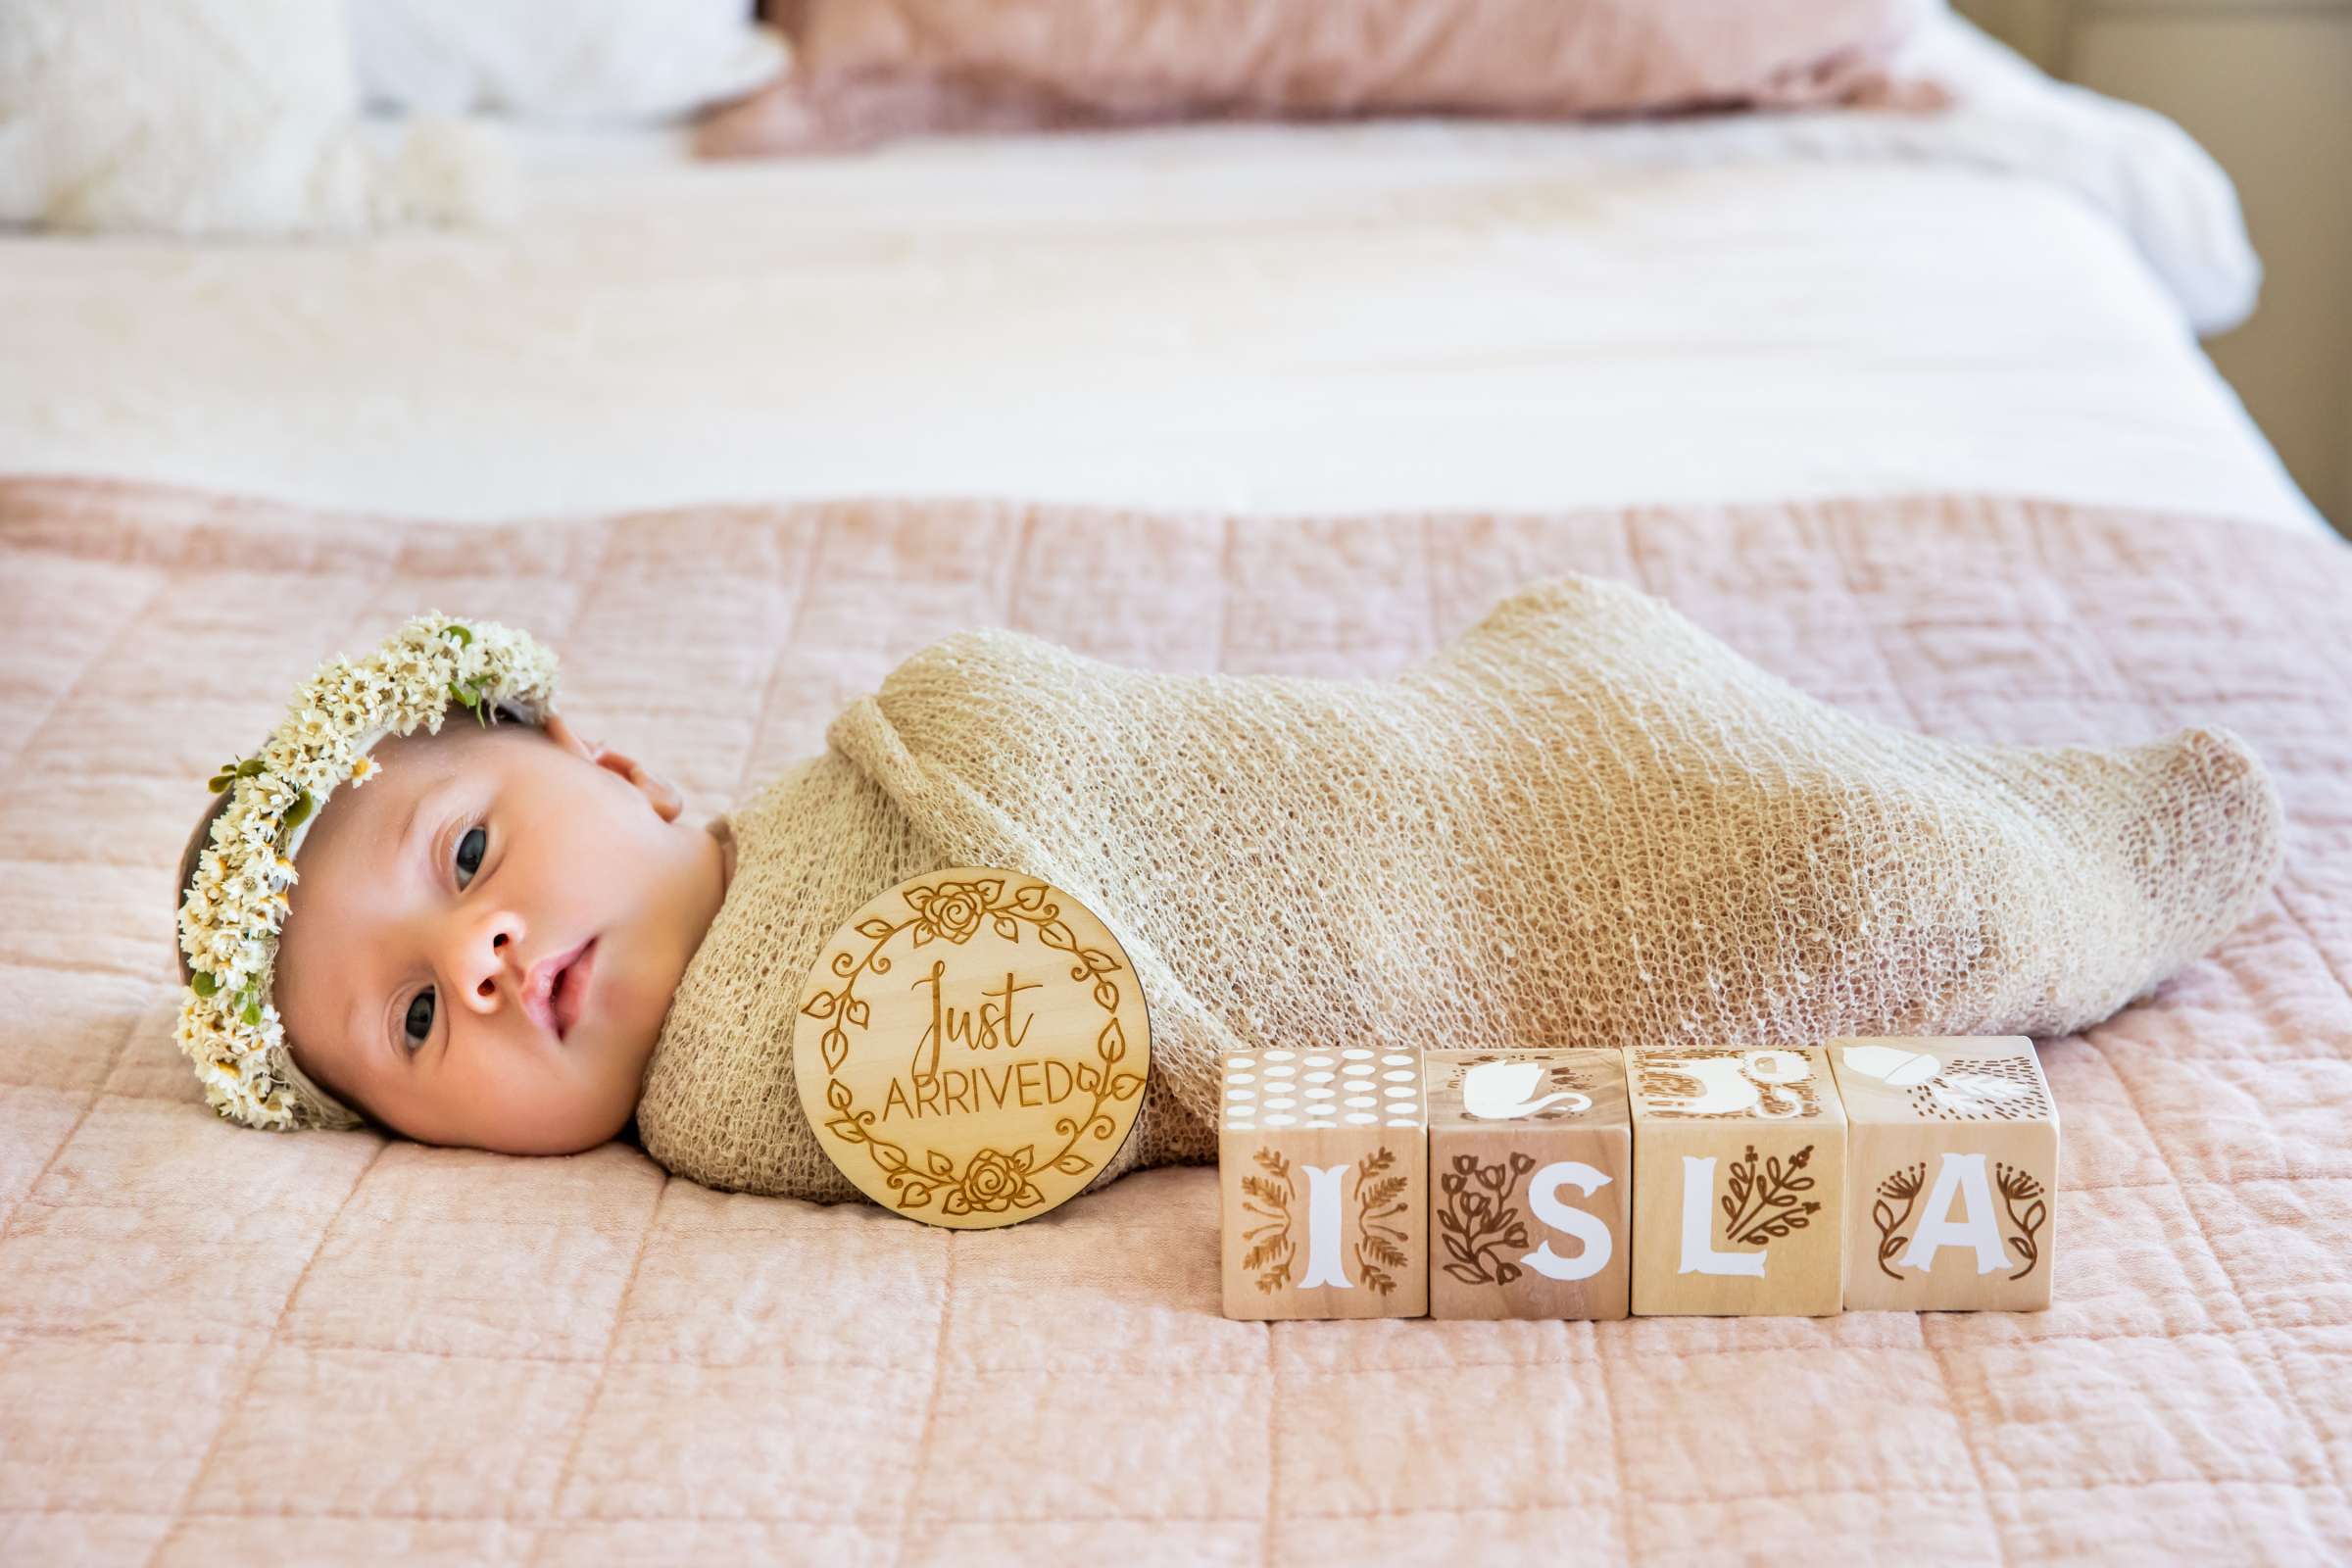 Newborn Photo Session, Sonya Ross Newborn Photo #1 by True Photography